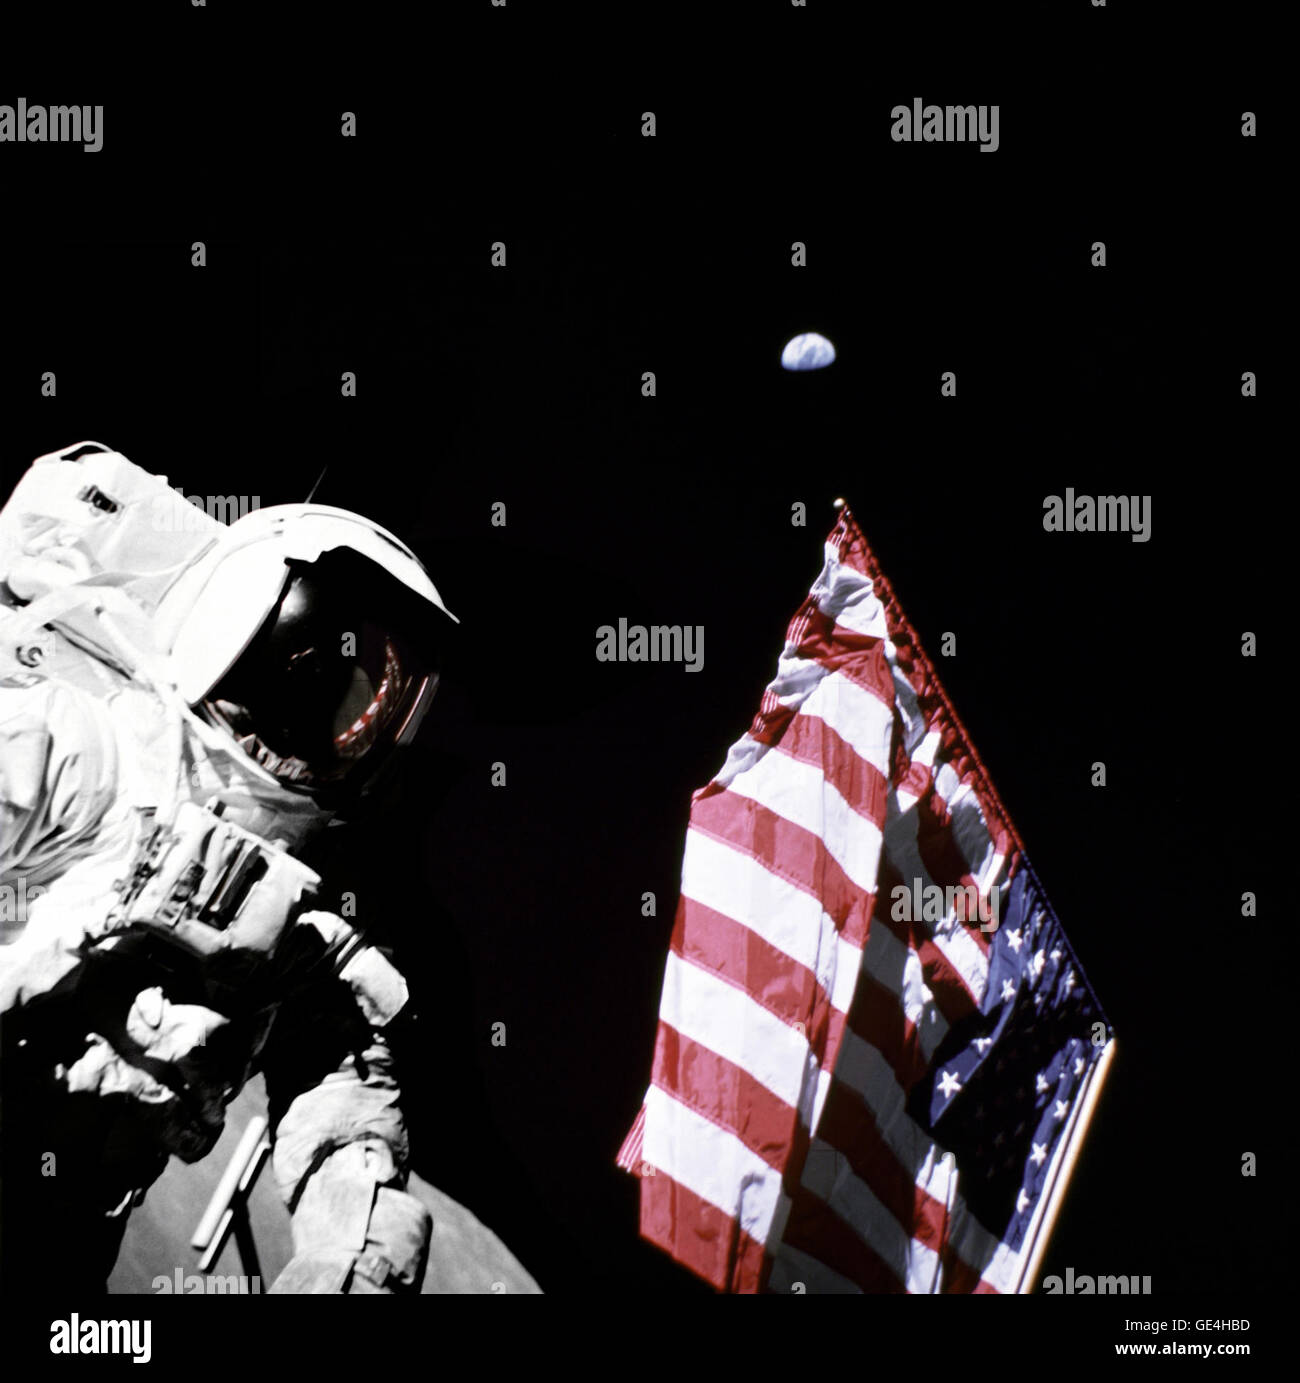 Geologe-Astronaut Harrison Schmitt, Pilot der Mondlandefähre von Apollo 17, ist neben der amerikanischen Flagge während Extravehicular Activity (EVA) von der Mission der NASA letzten Mondlandung der Apollo-Serie fotografiert. Das Foto wurde am Taurus-Littrow-Landeplatz. Der höchste Teil der Flagge scheint in Richtung unseres Planetenerde im fernen Hintergrund zeigen.   Bild-Nr.: AS17-134-20384 13. Dezember 1972 Stockfoto